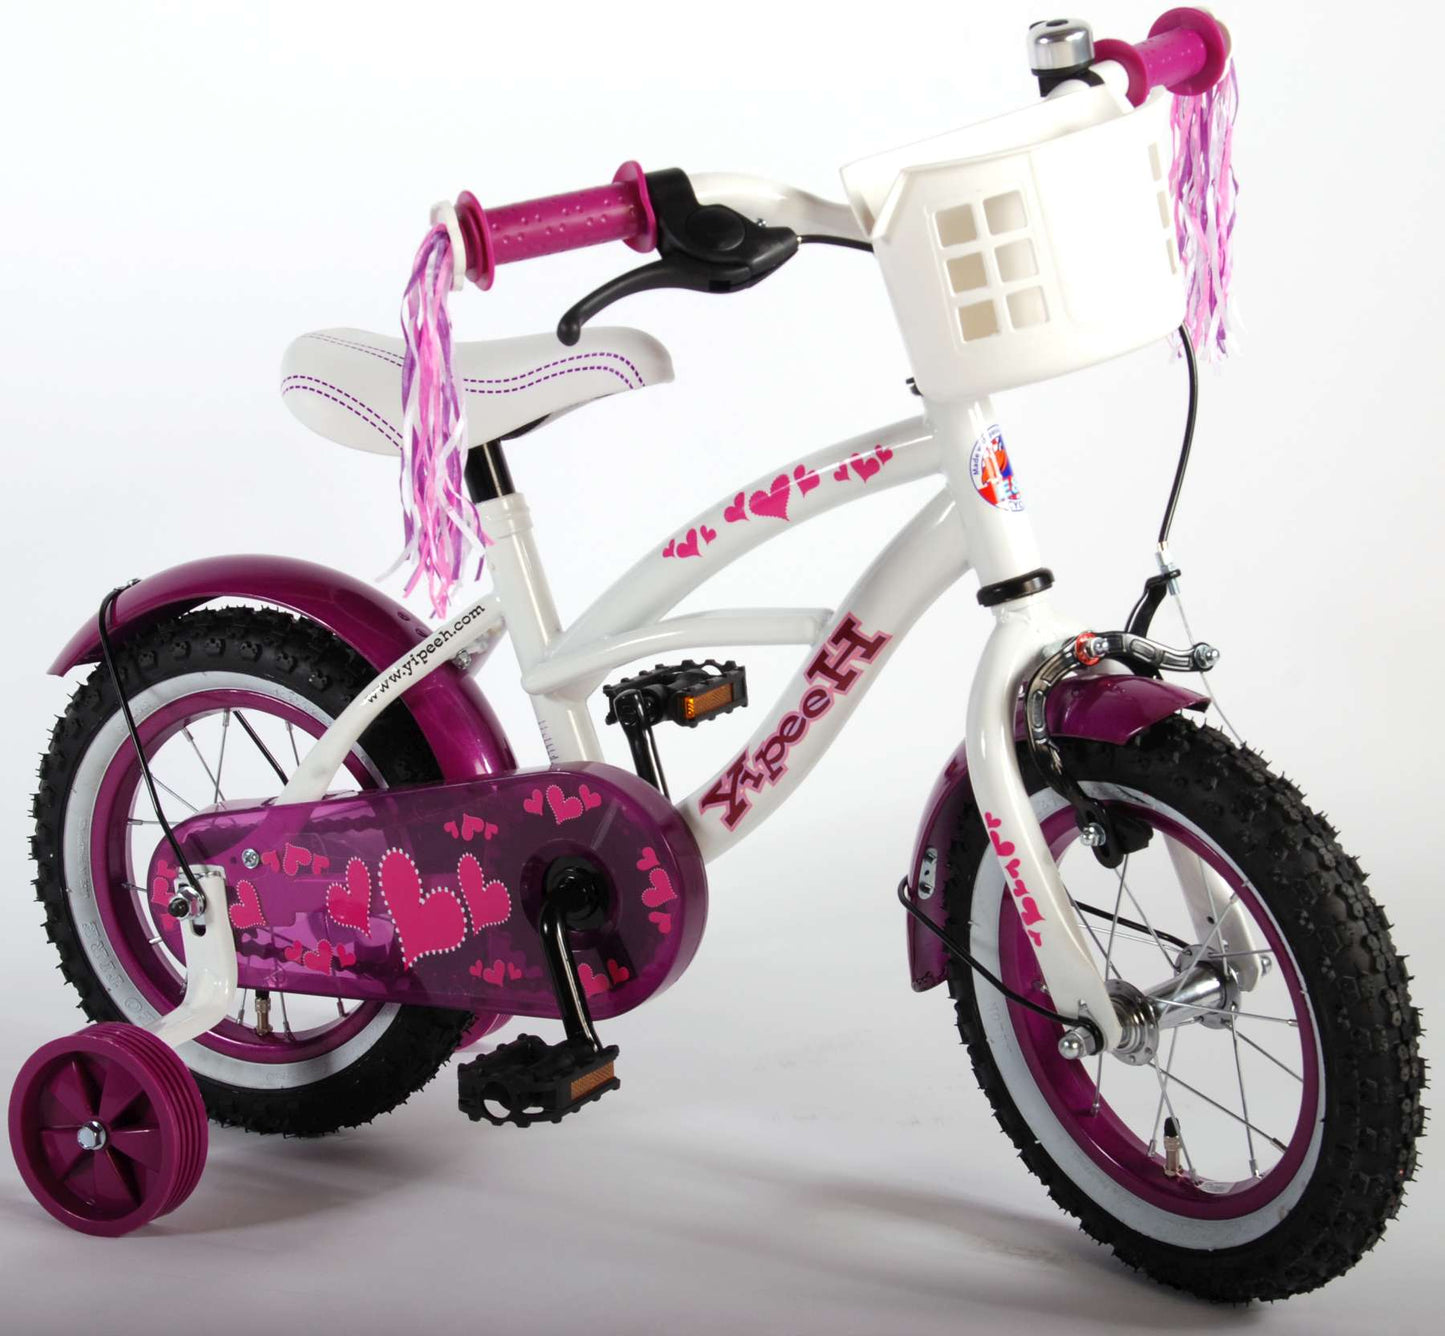 Bike per bambini Vlatar Heart Cruiser - Girls - 12 pollici - Purpola bianca